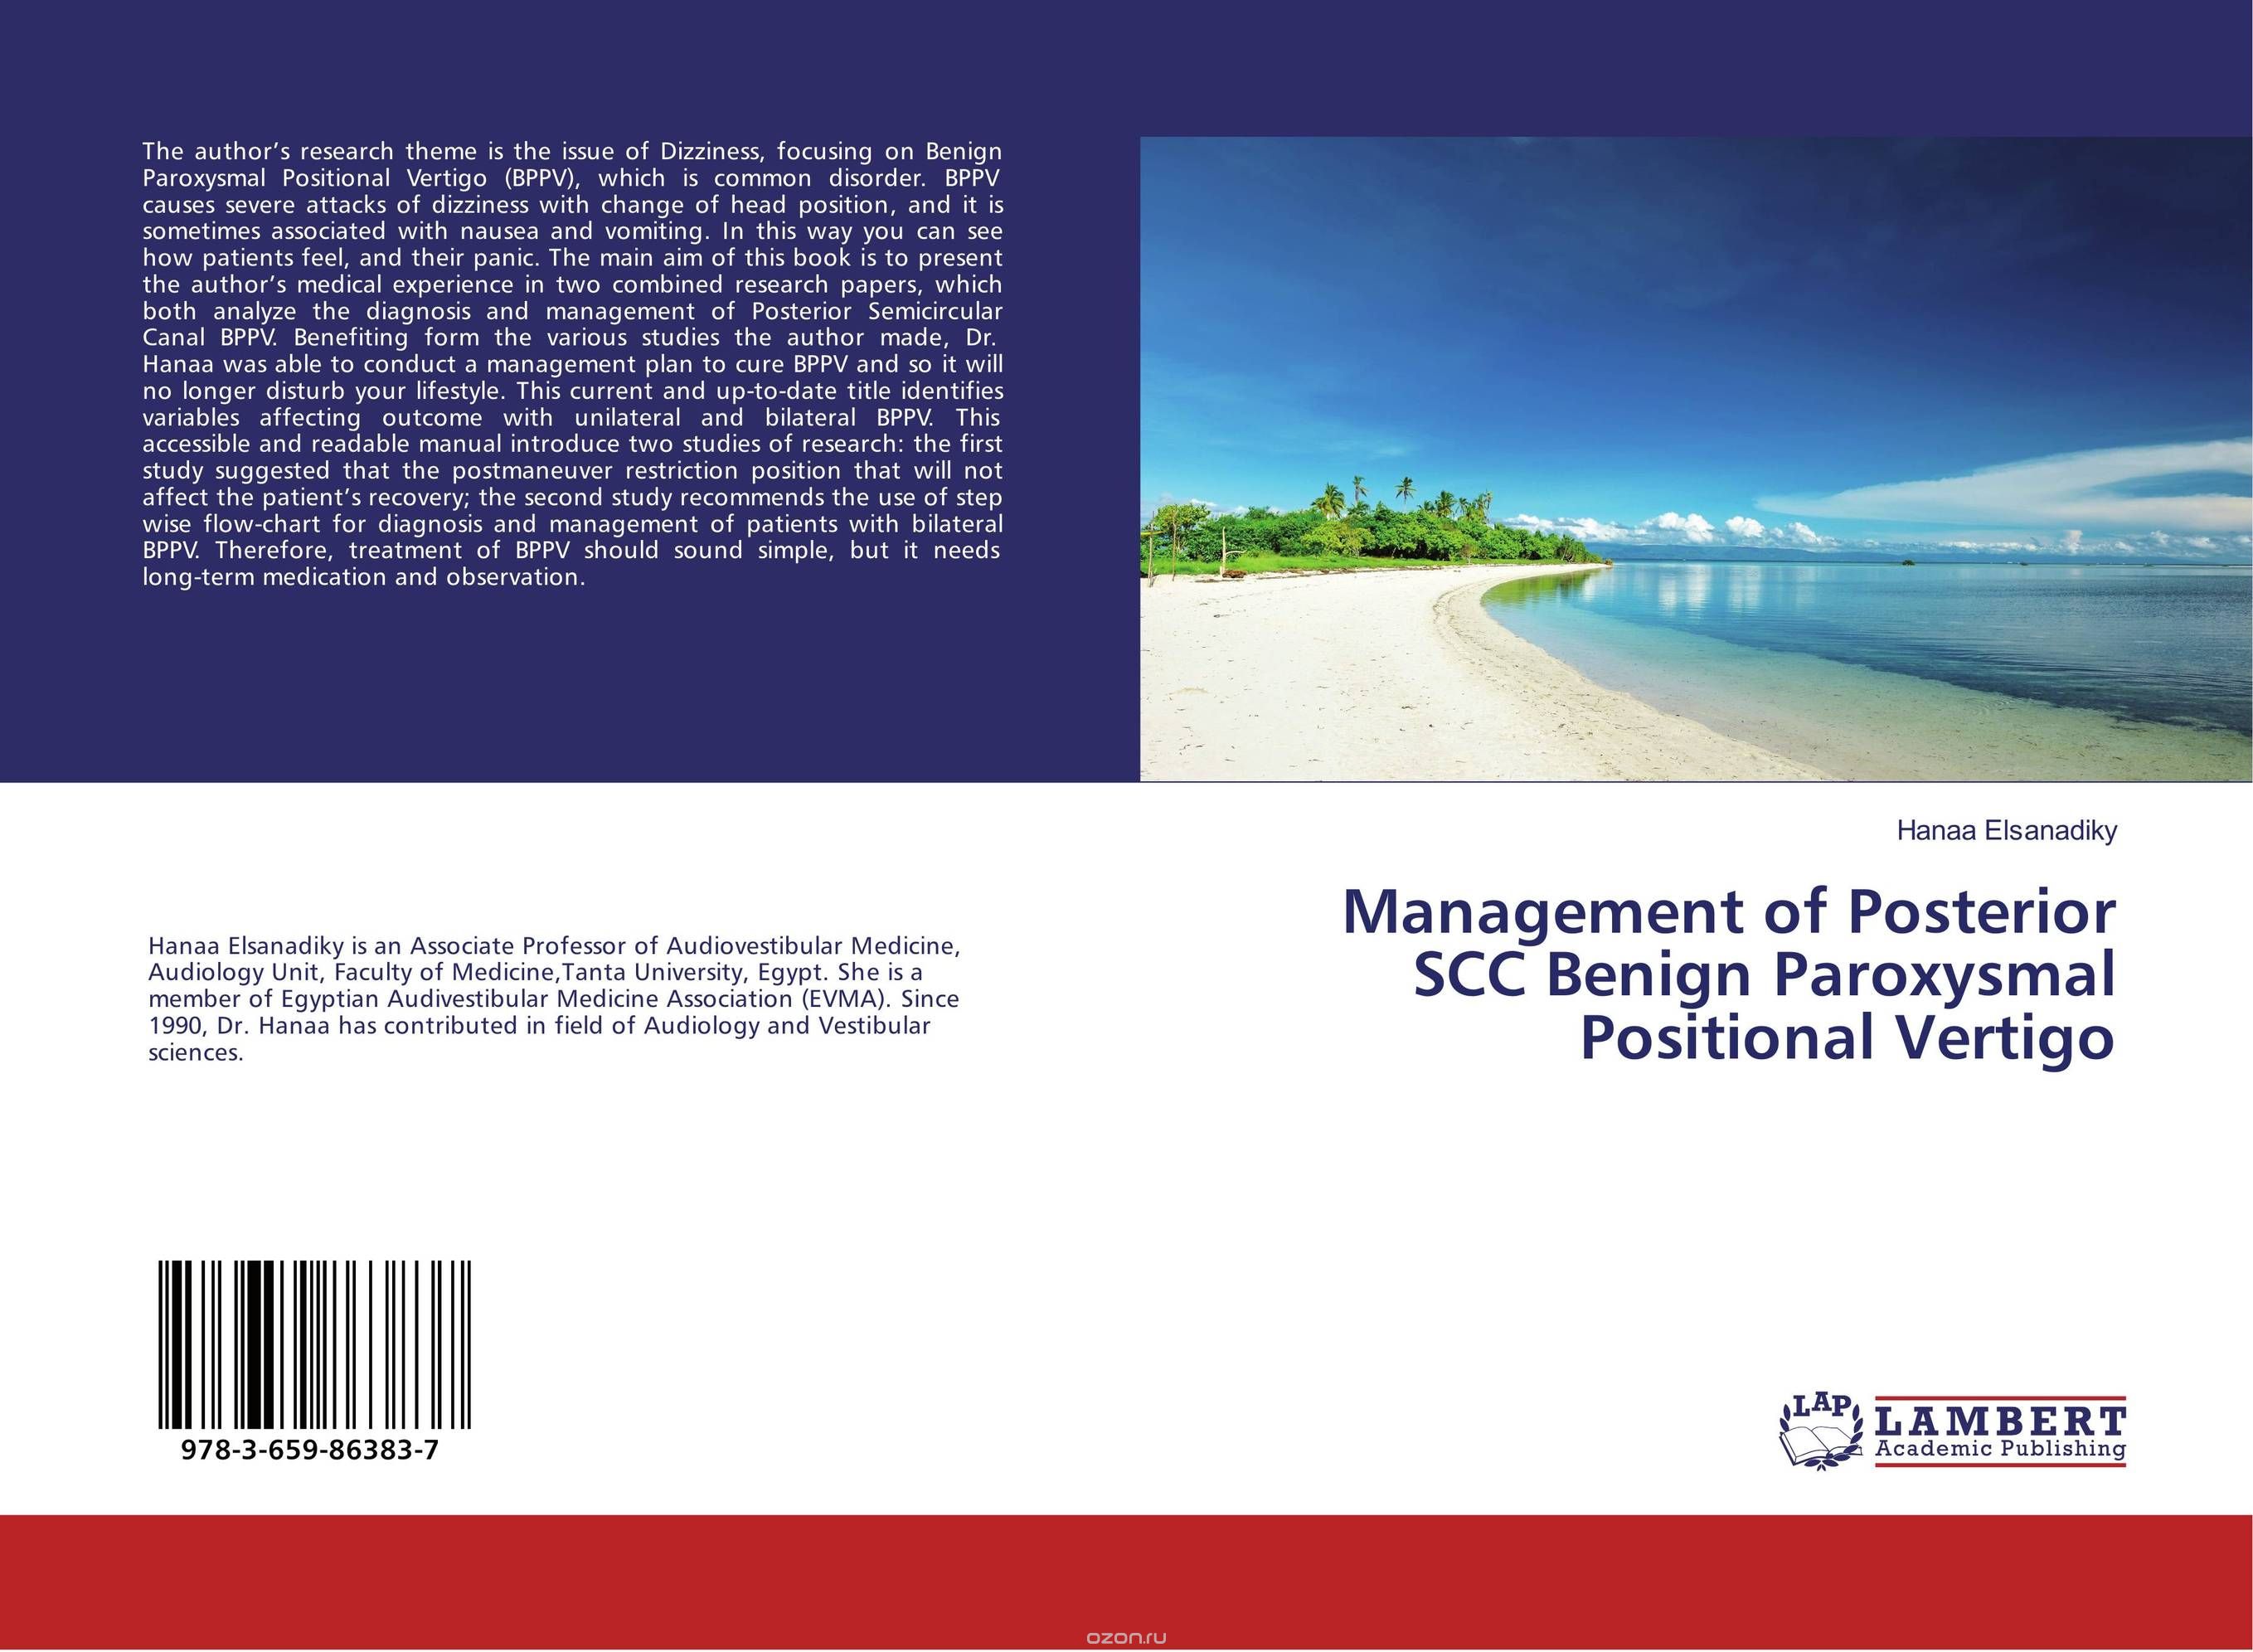 Management of Posterior SCC Benign Paroxysmal Positional Vertigo